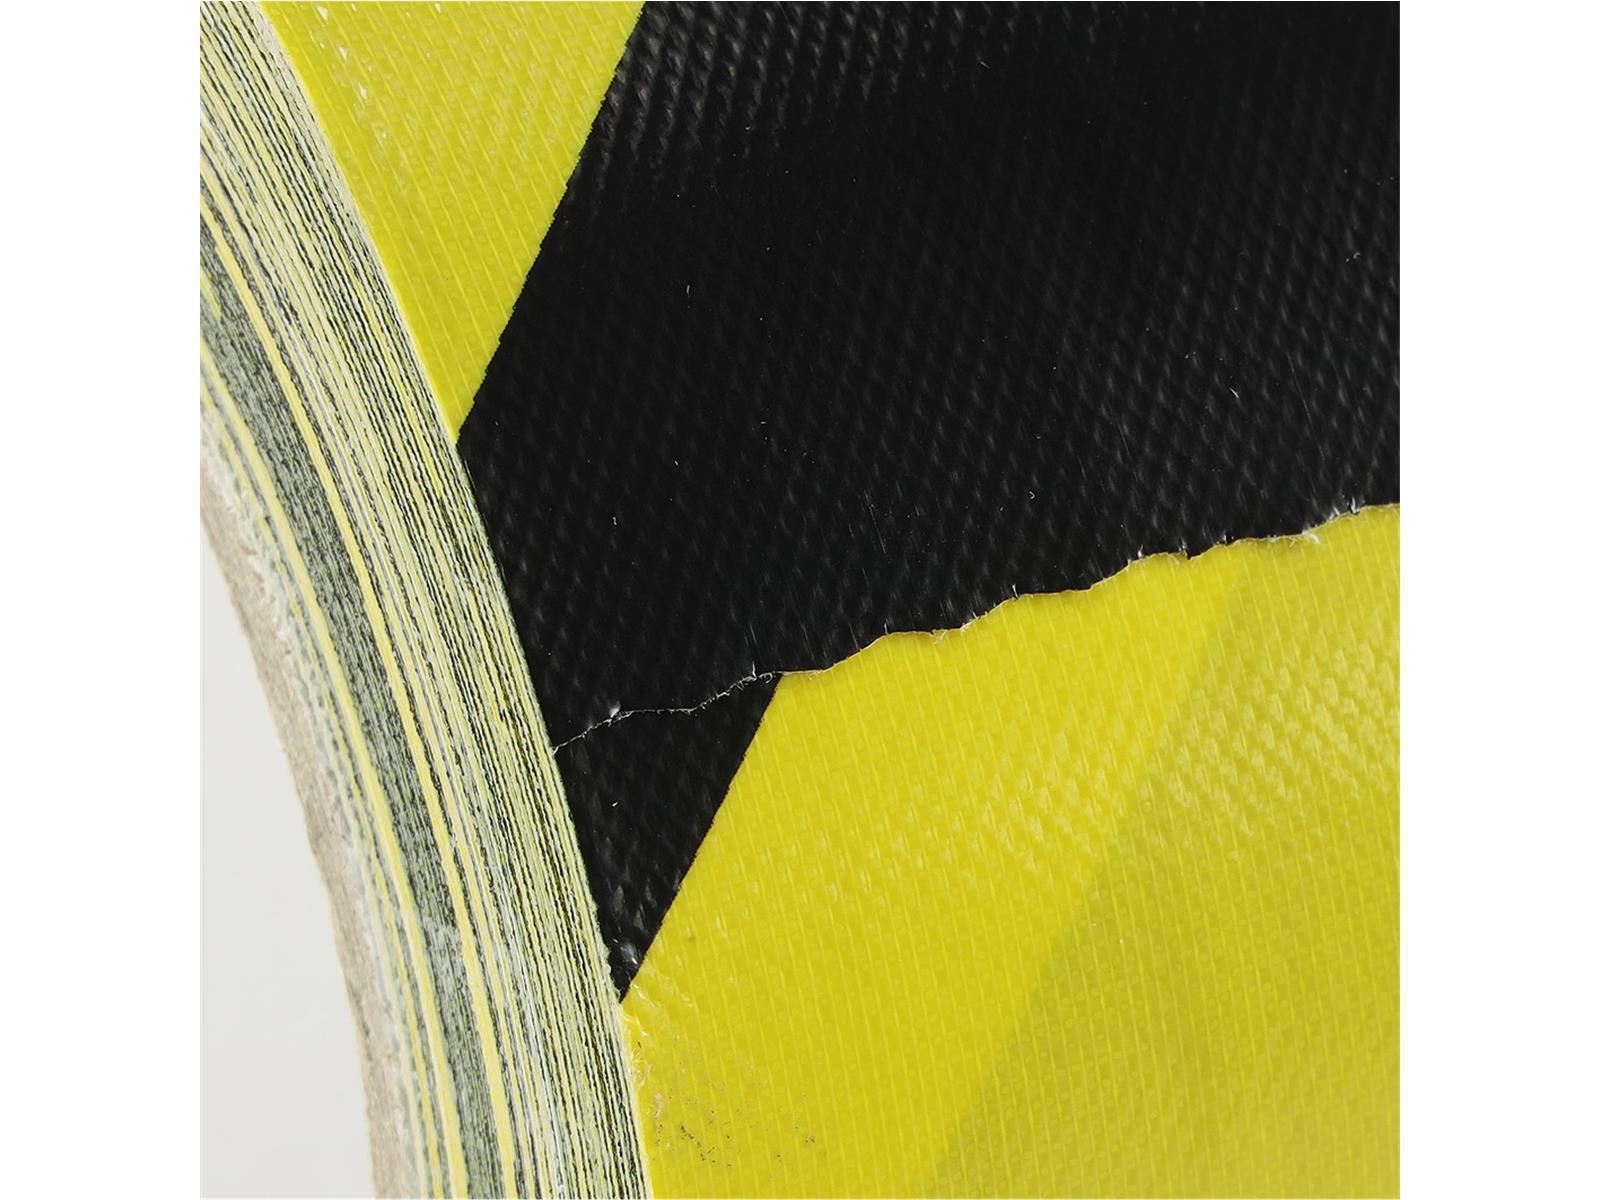 Profi Gewebe-Klebeband schwarz / gelbIndustrie-Markierungsband, 50mm x 25m